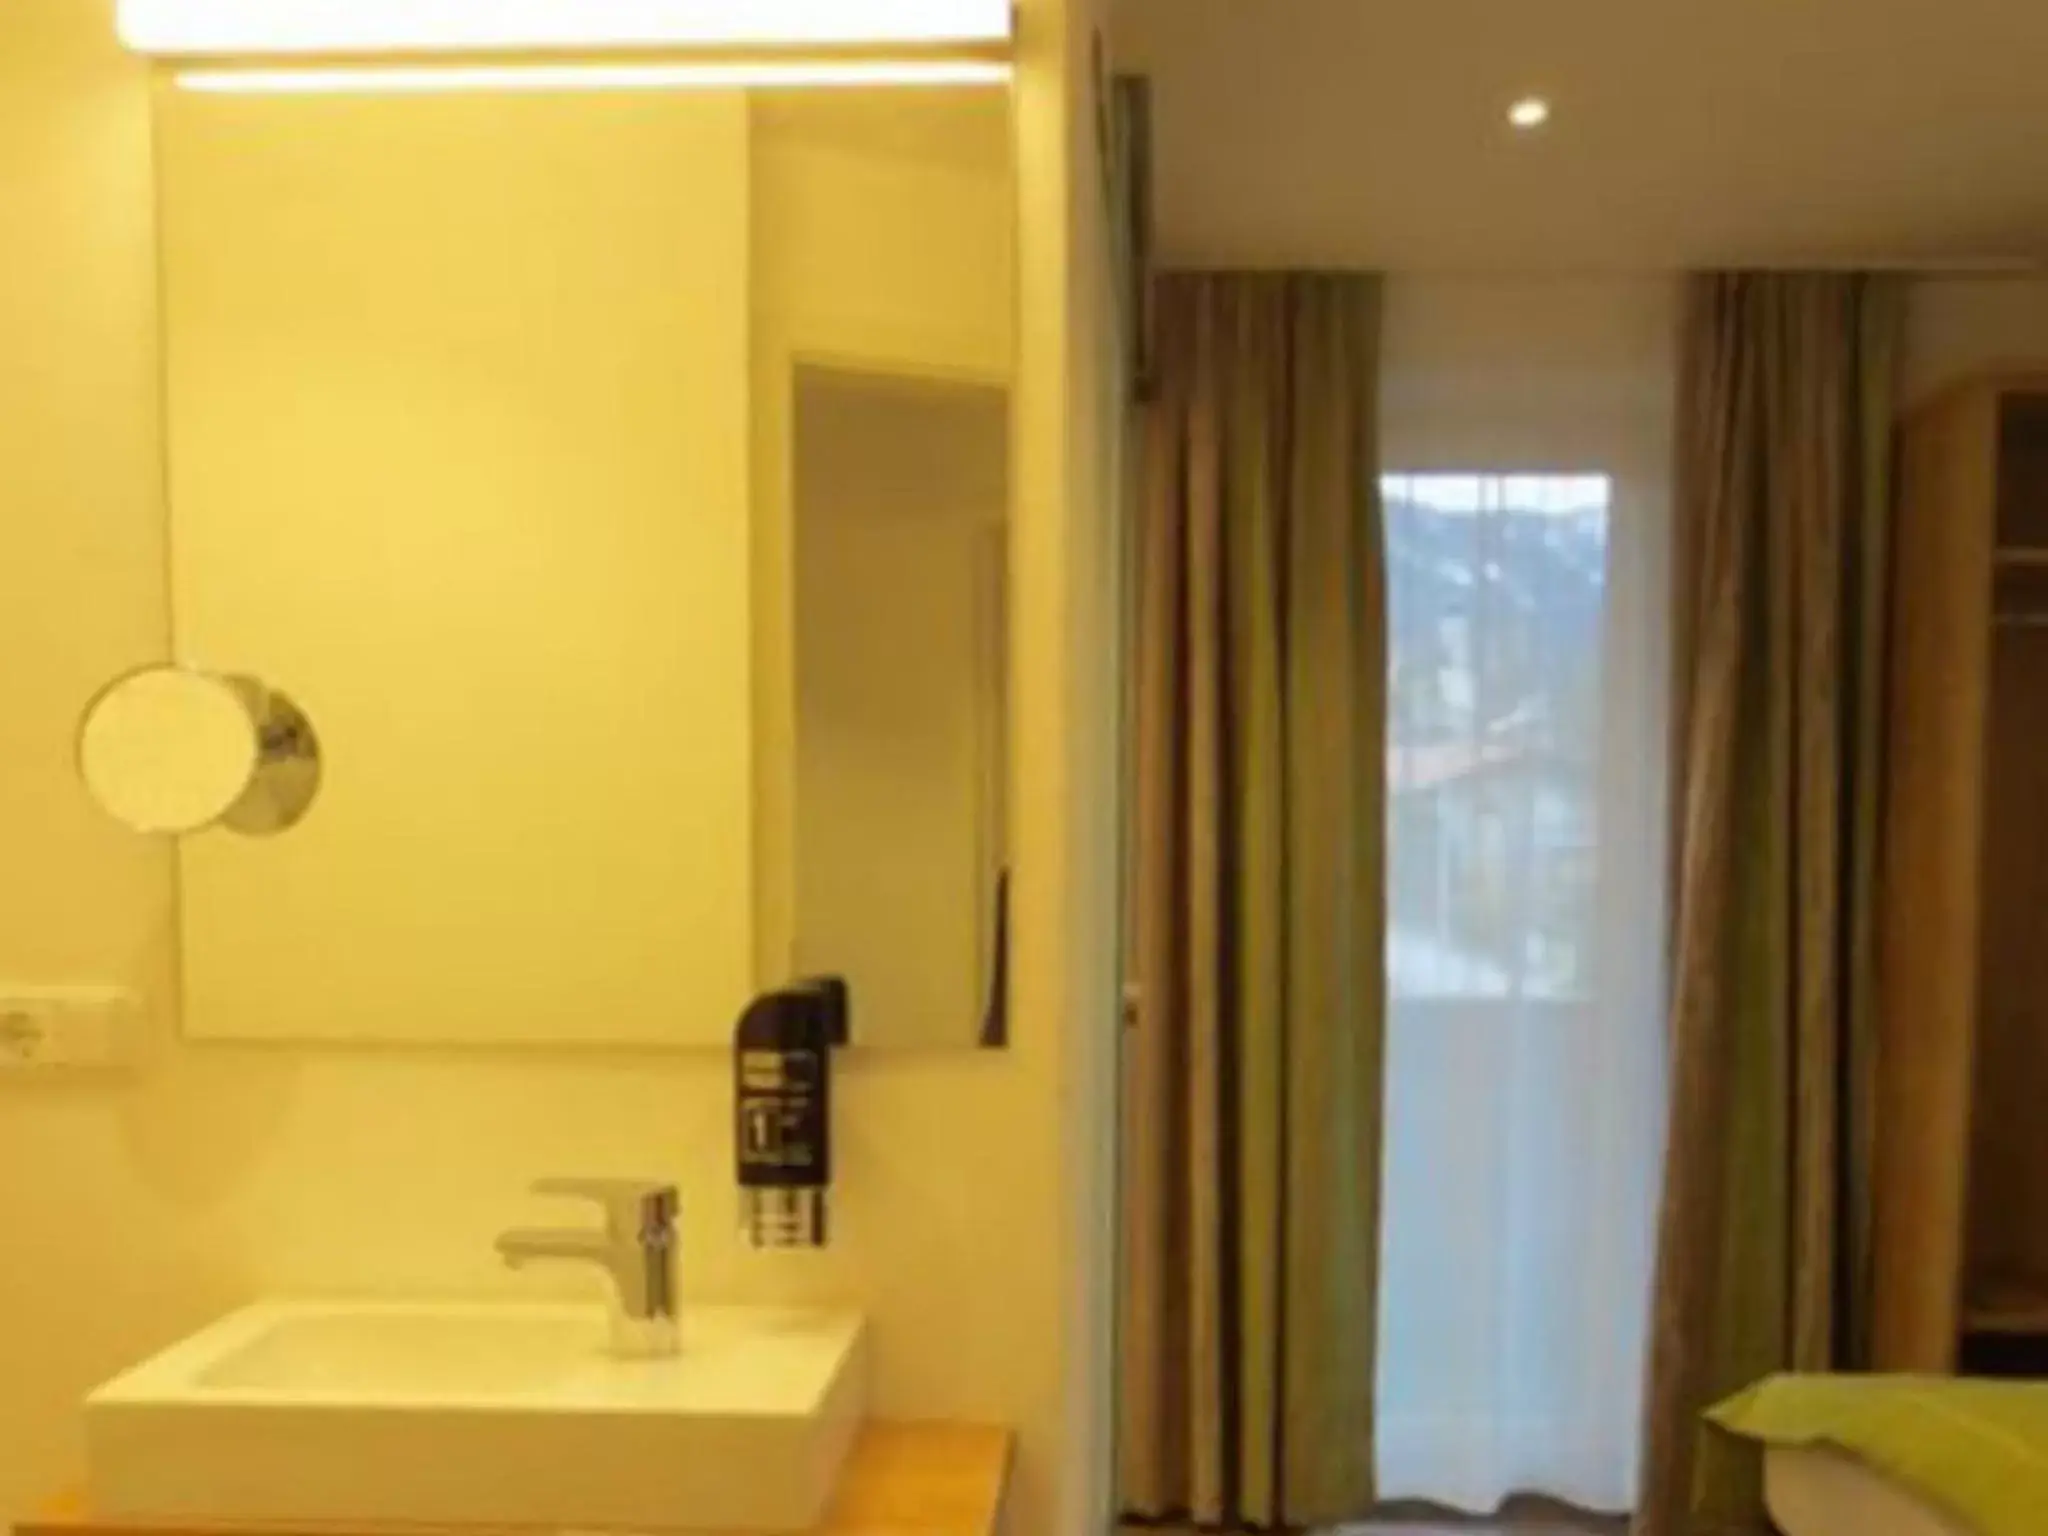 Photo of the whole room, Bathroom in Hotel Alp Inn